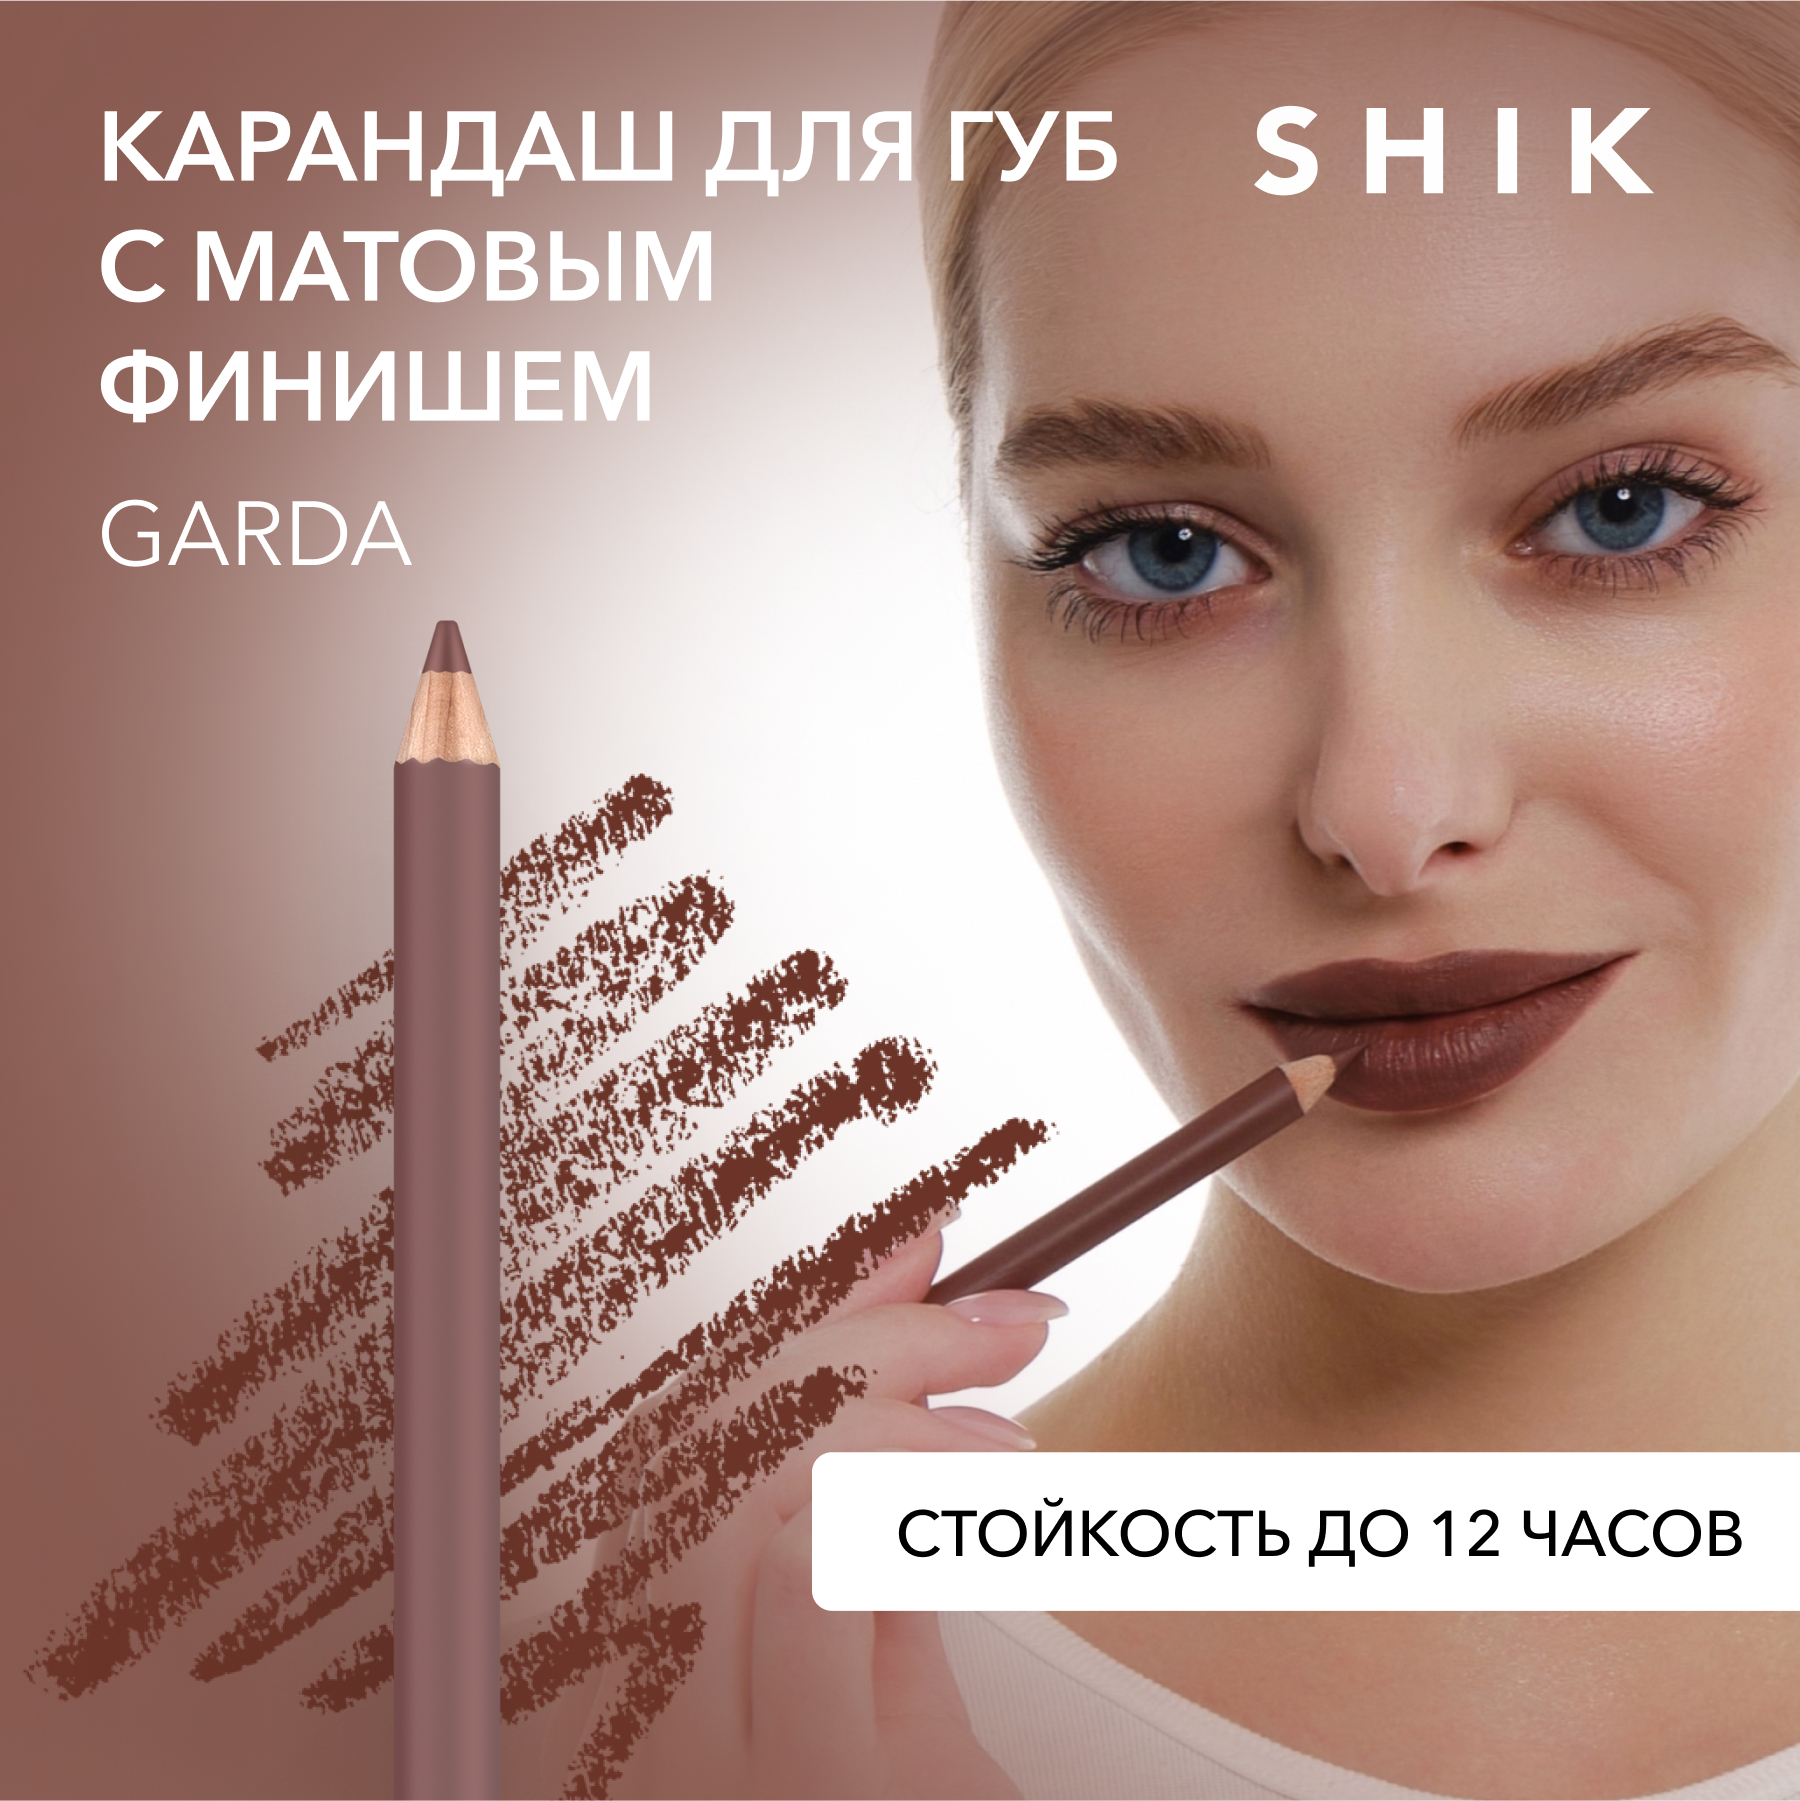 Карандаш для губ SHIK Lip Pencil тон Garda 1,14 г shik карандаш для губ lip pencil garda 12 гр